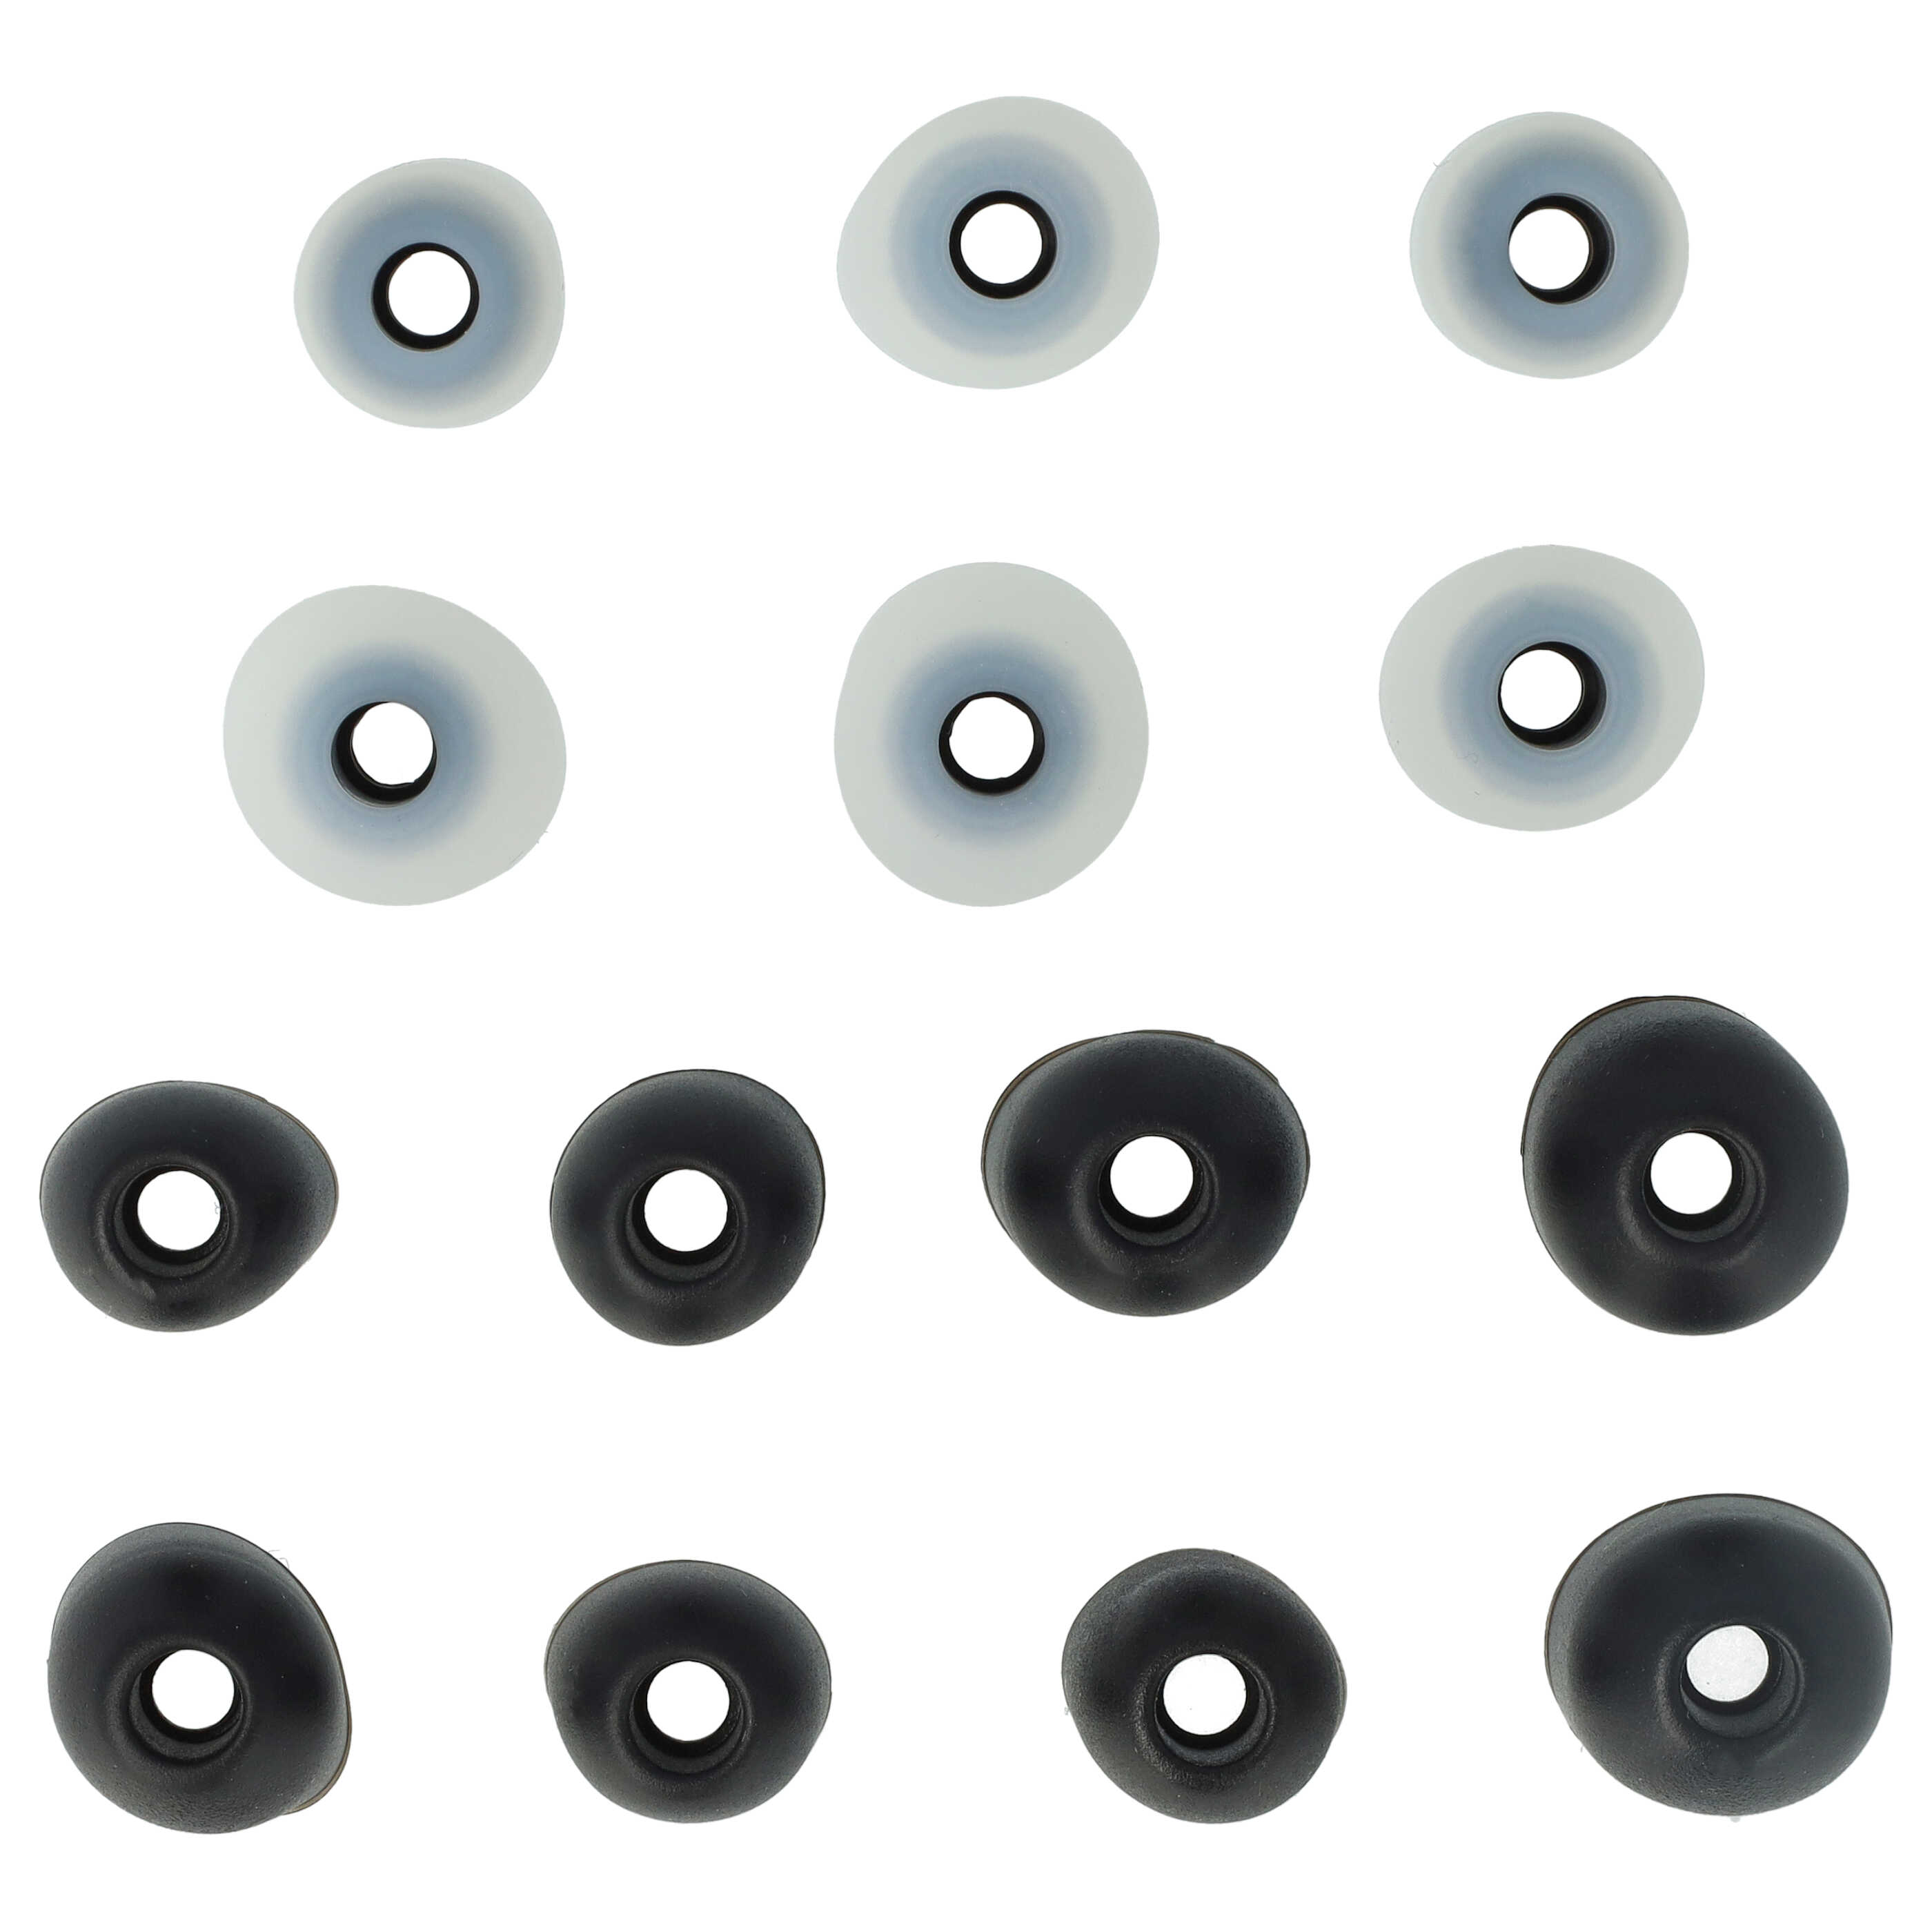  7x pares de tapones compatible con Sony WF-1000XM3 para auriculares inalámbricos - negro / blanco